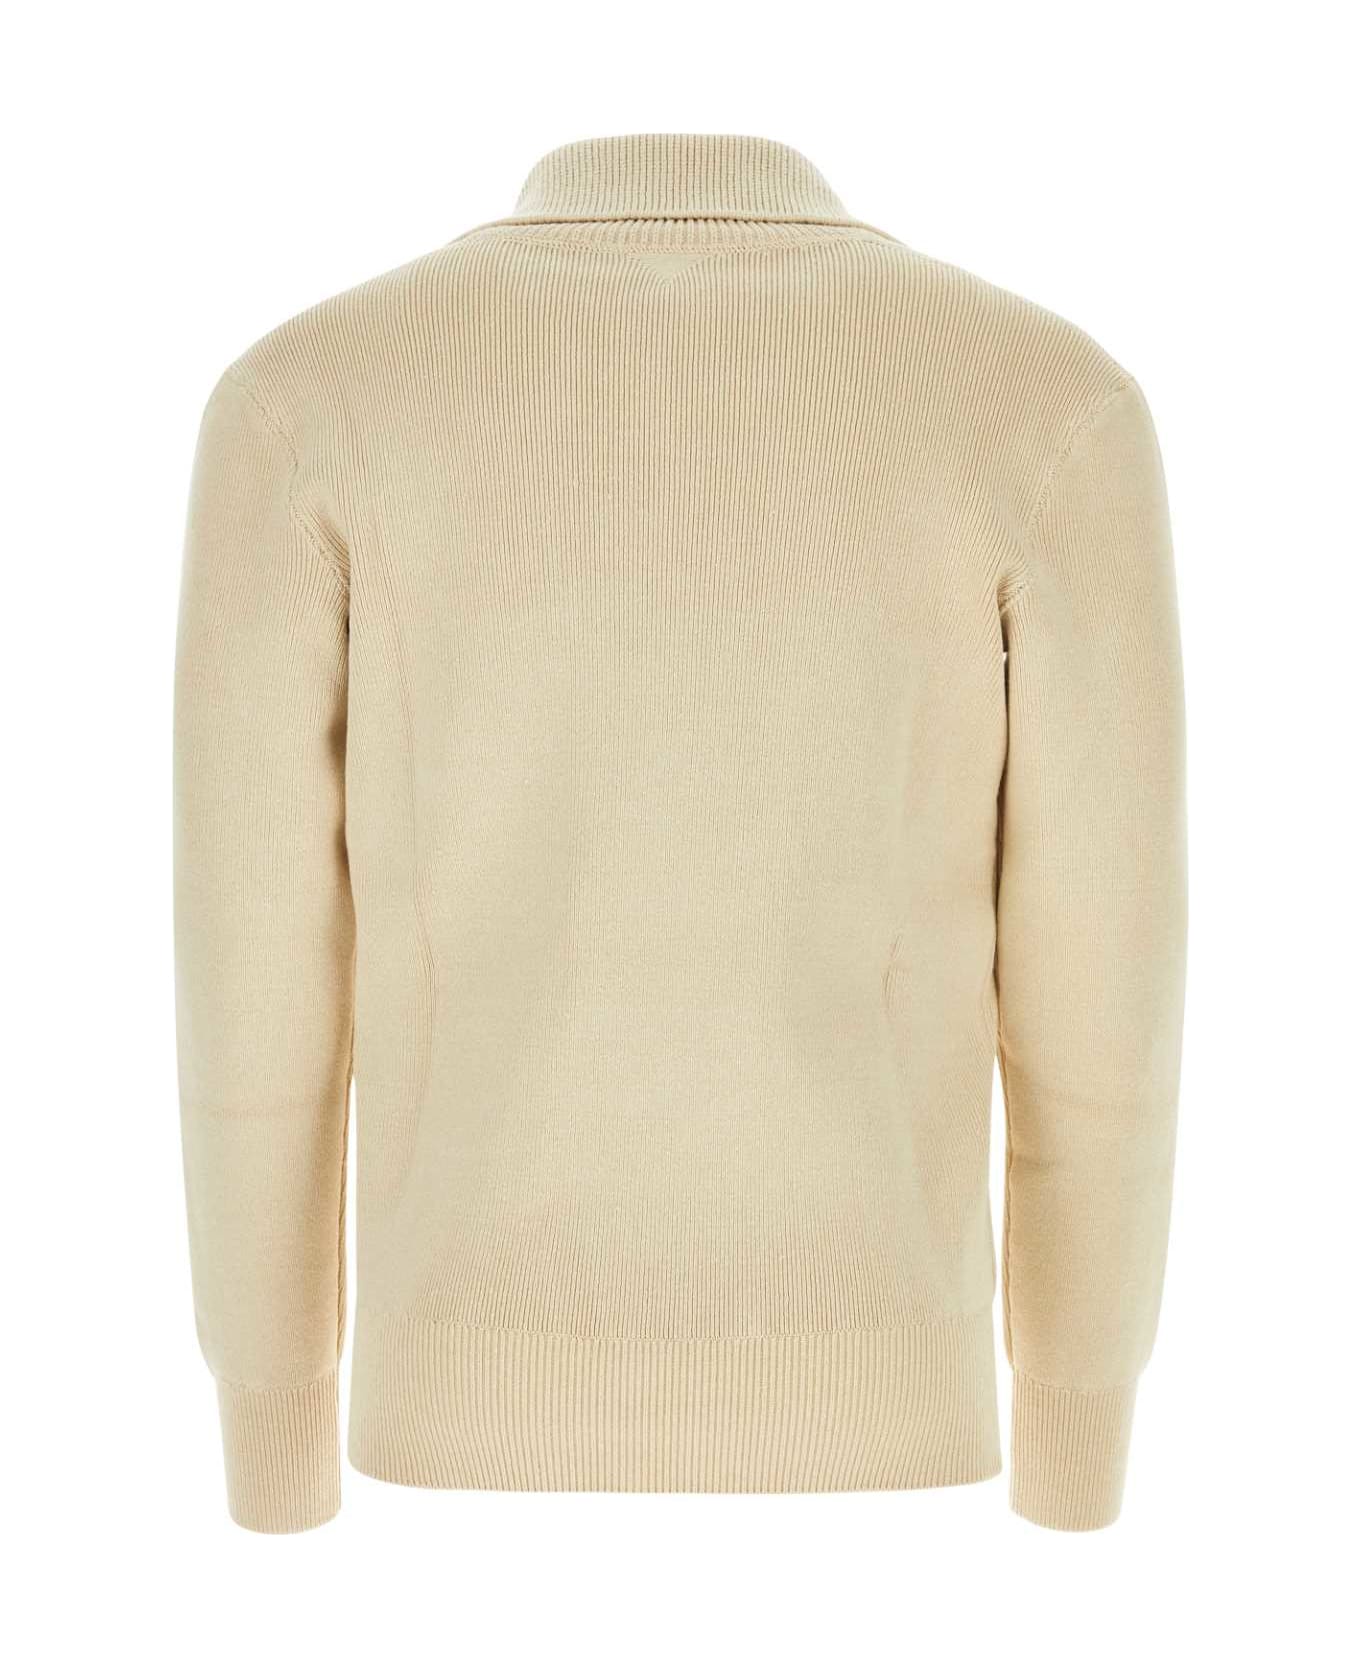 Bottega Veneta Beige Linen Blend Sweater - BEIGE